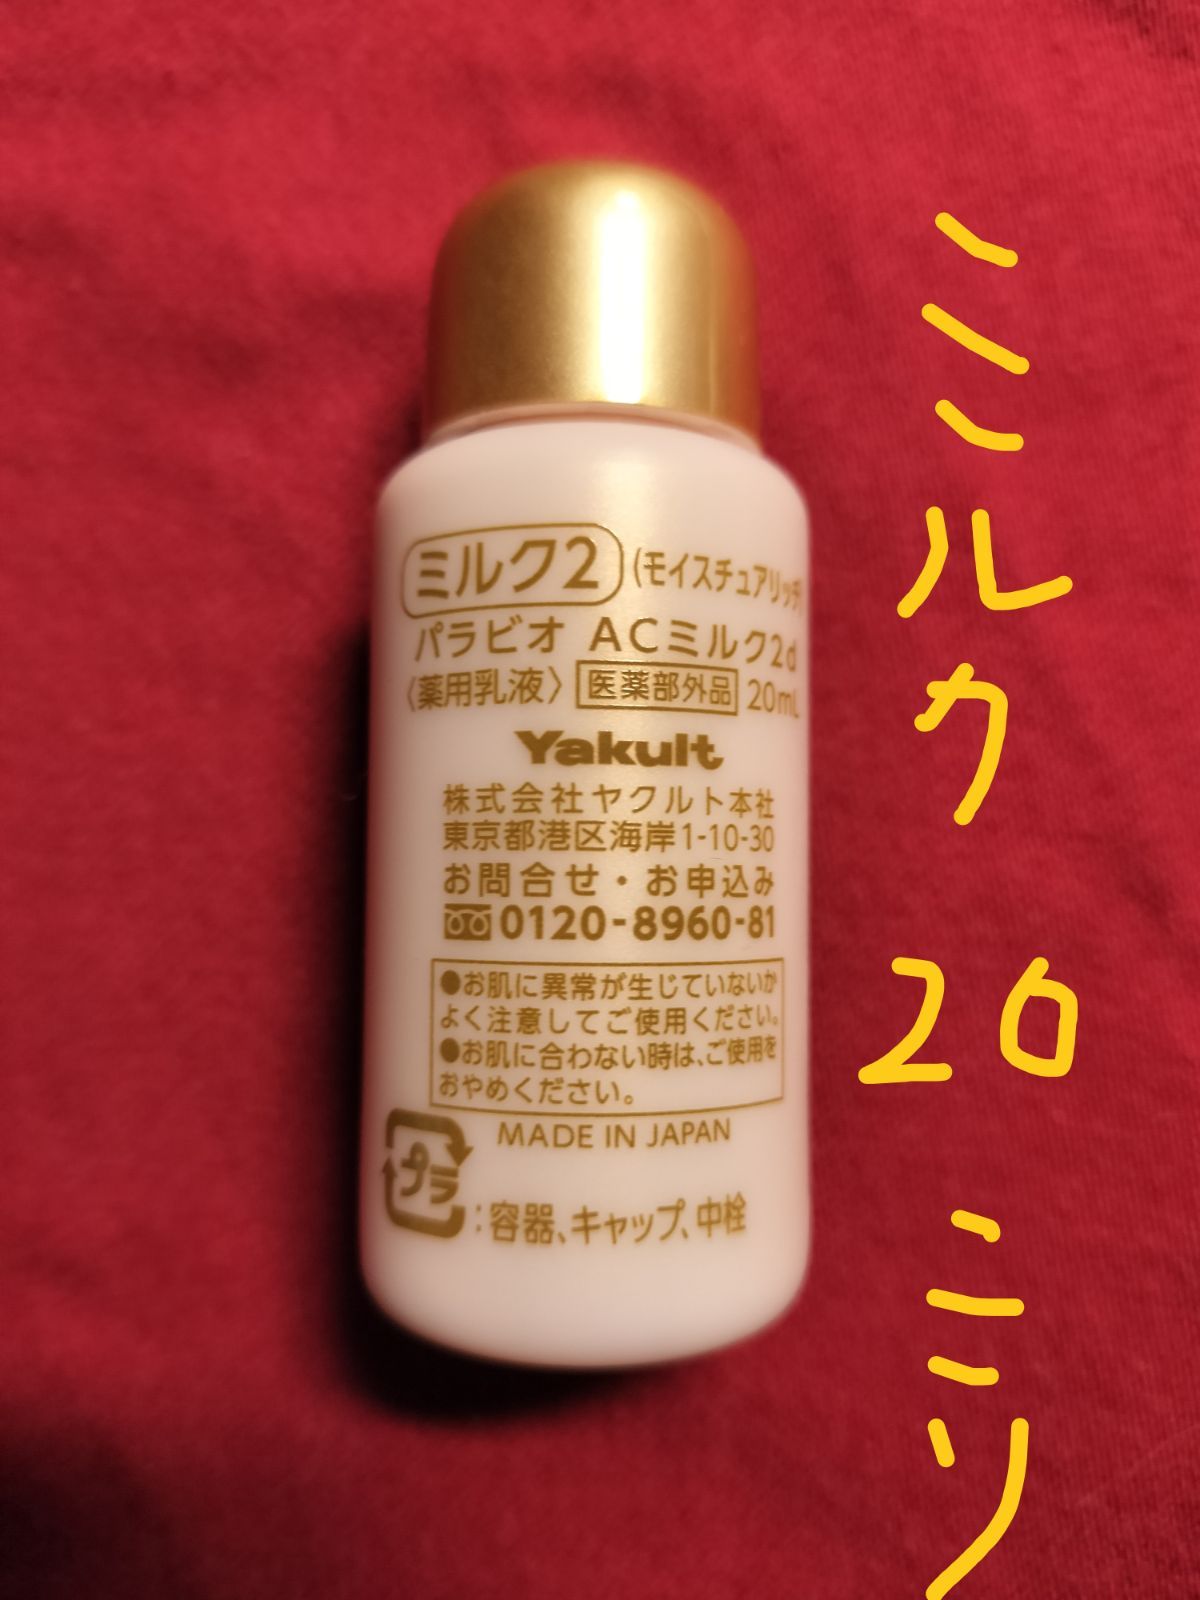 宇宙の香り ヤクルト化粧品 パラビオミルクⅡ 60ml (新品・未使用